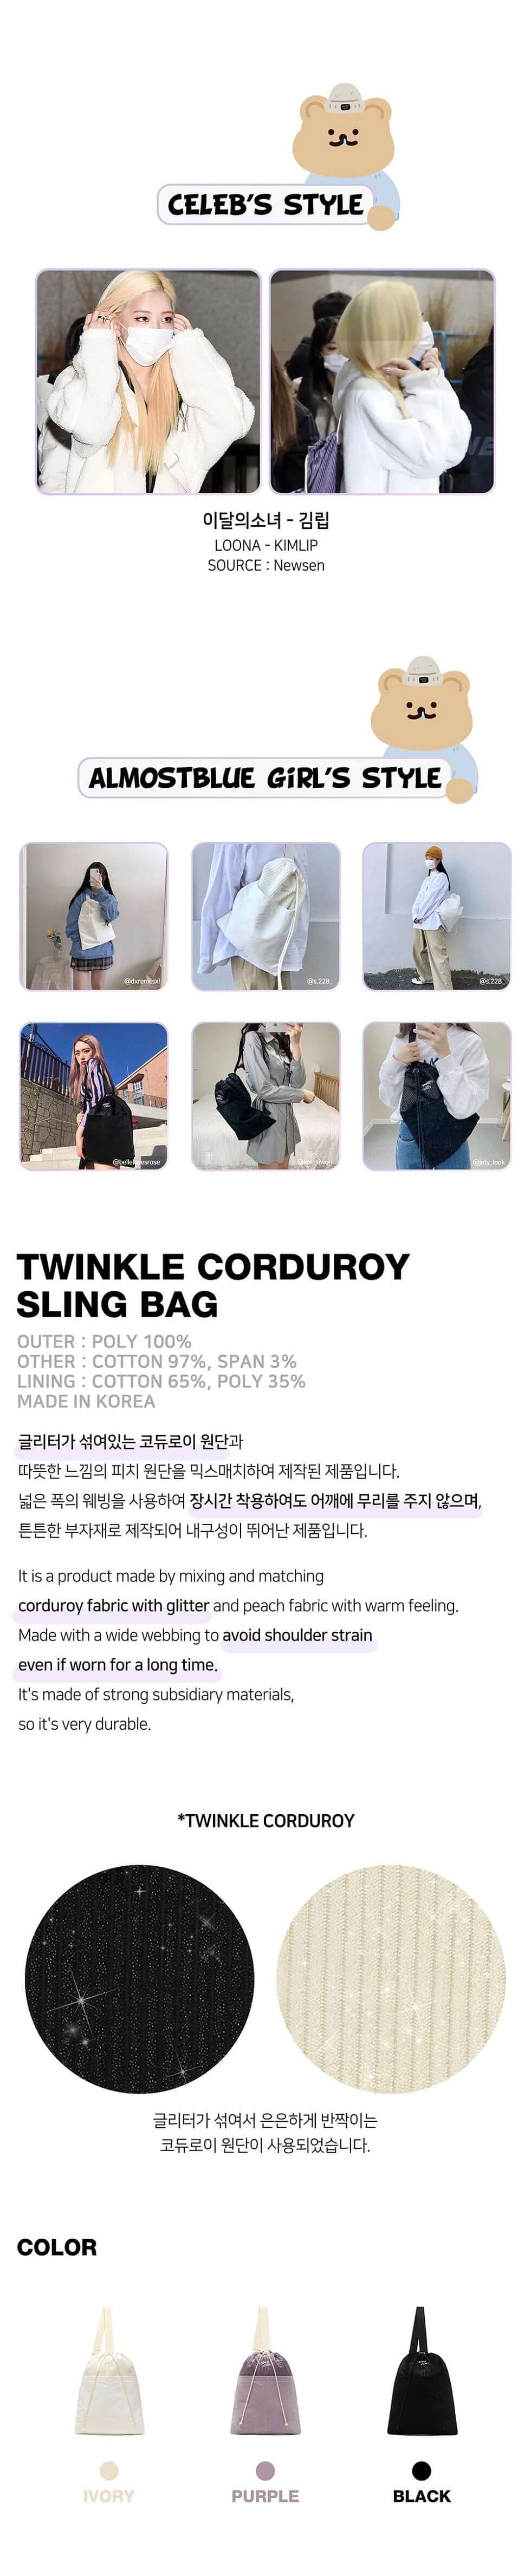 ALMOSTBLUE Twinkle Corduroy Sling Bag